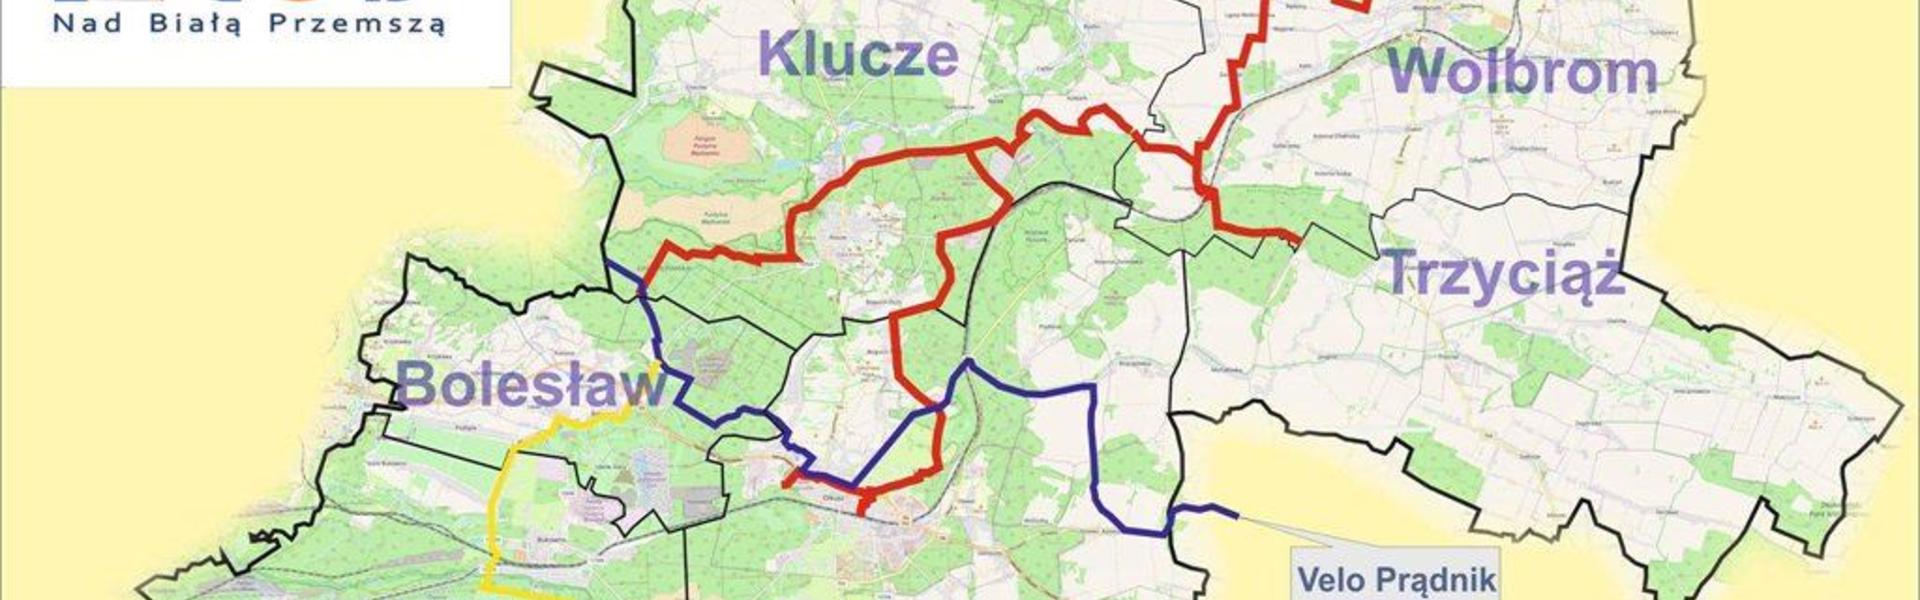 Fragment dokumentacji projektowej Utworzenie pętli rowerowych oraz infrastruktury turystycznej na obszarze powiatu olkuskiego jako zintegrowanego produktu turystycznego